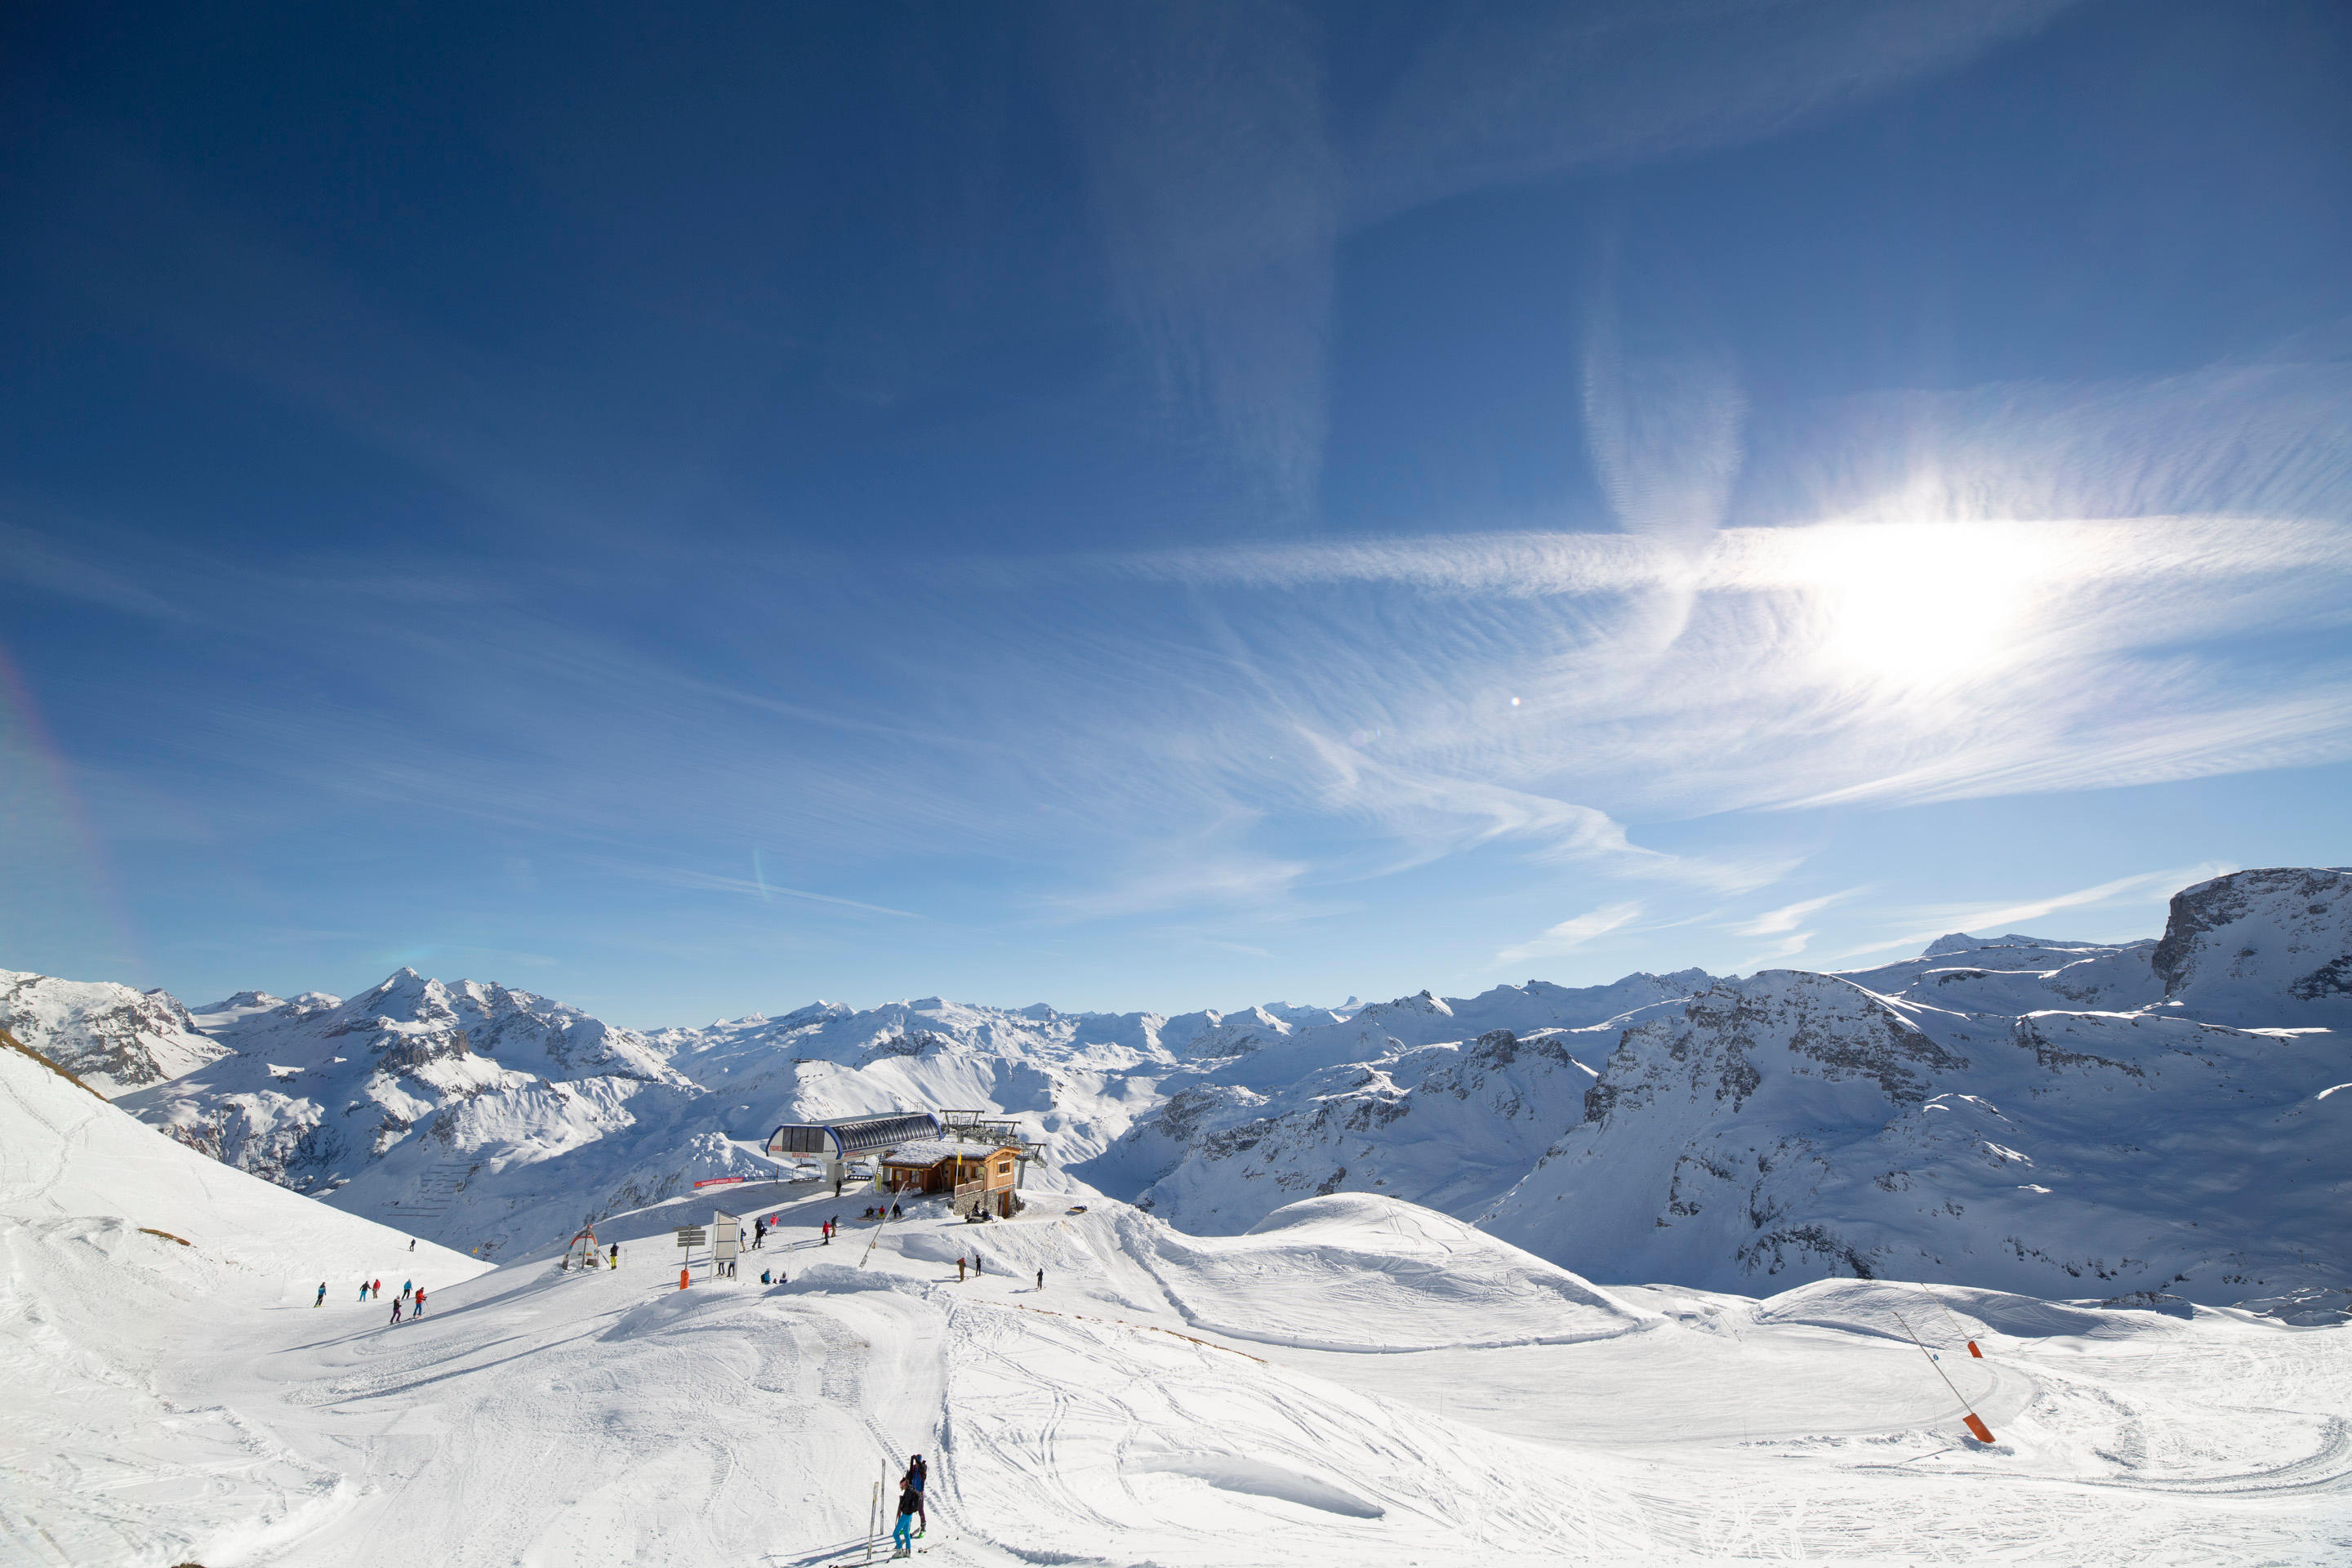 Domaine skiable Tignes/Val d'Isère